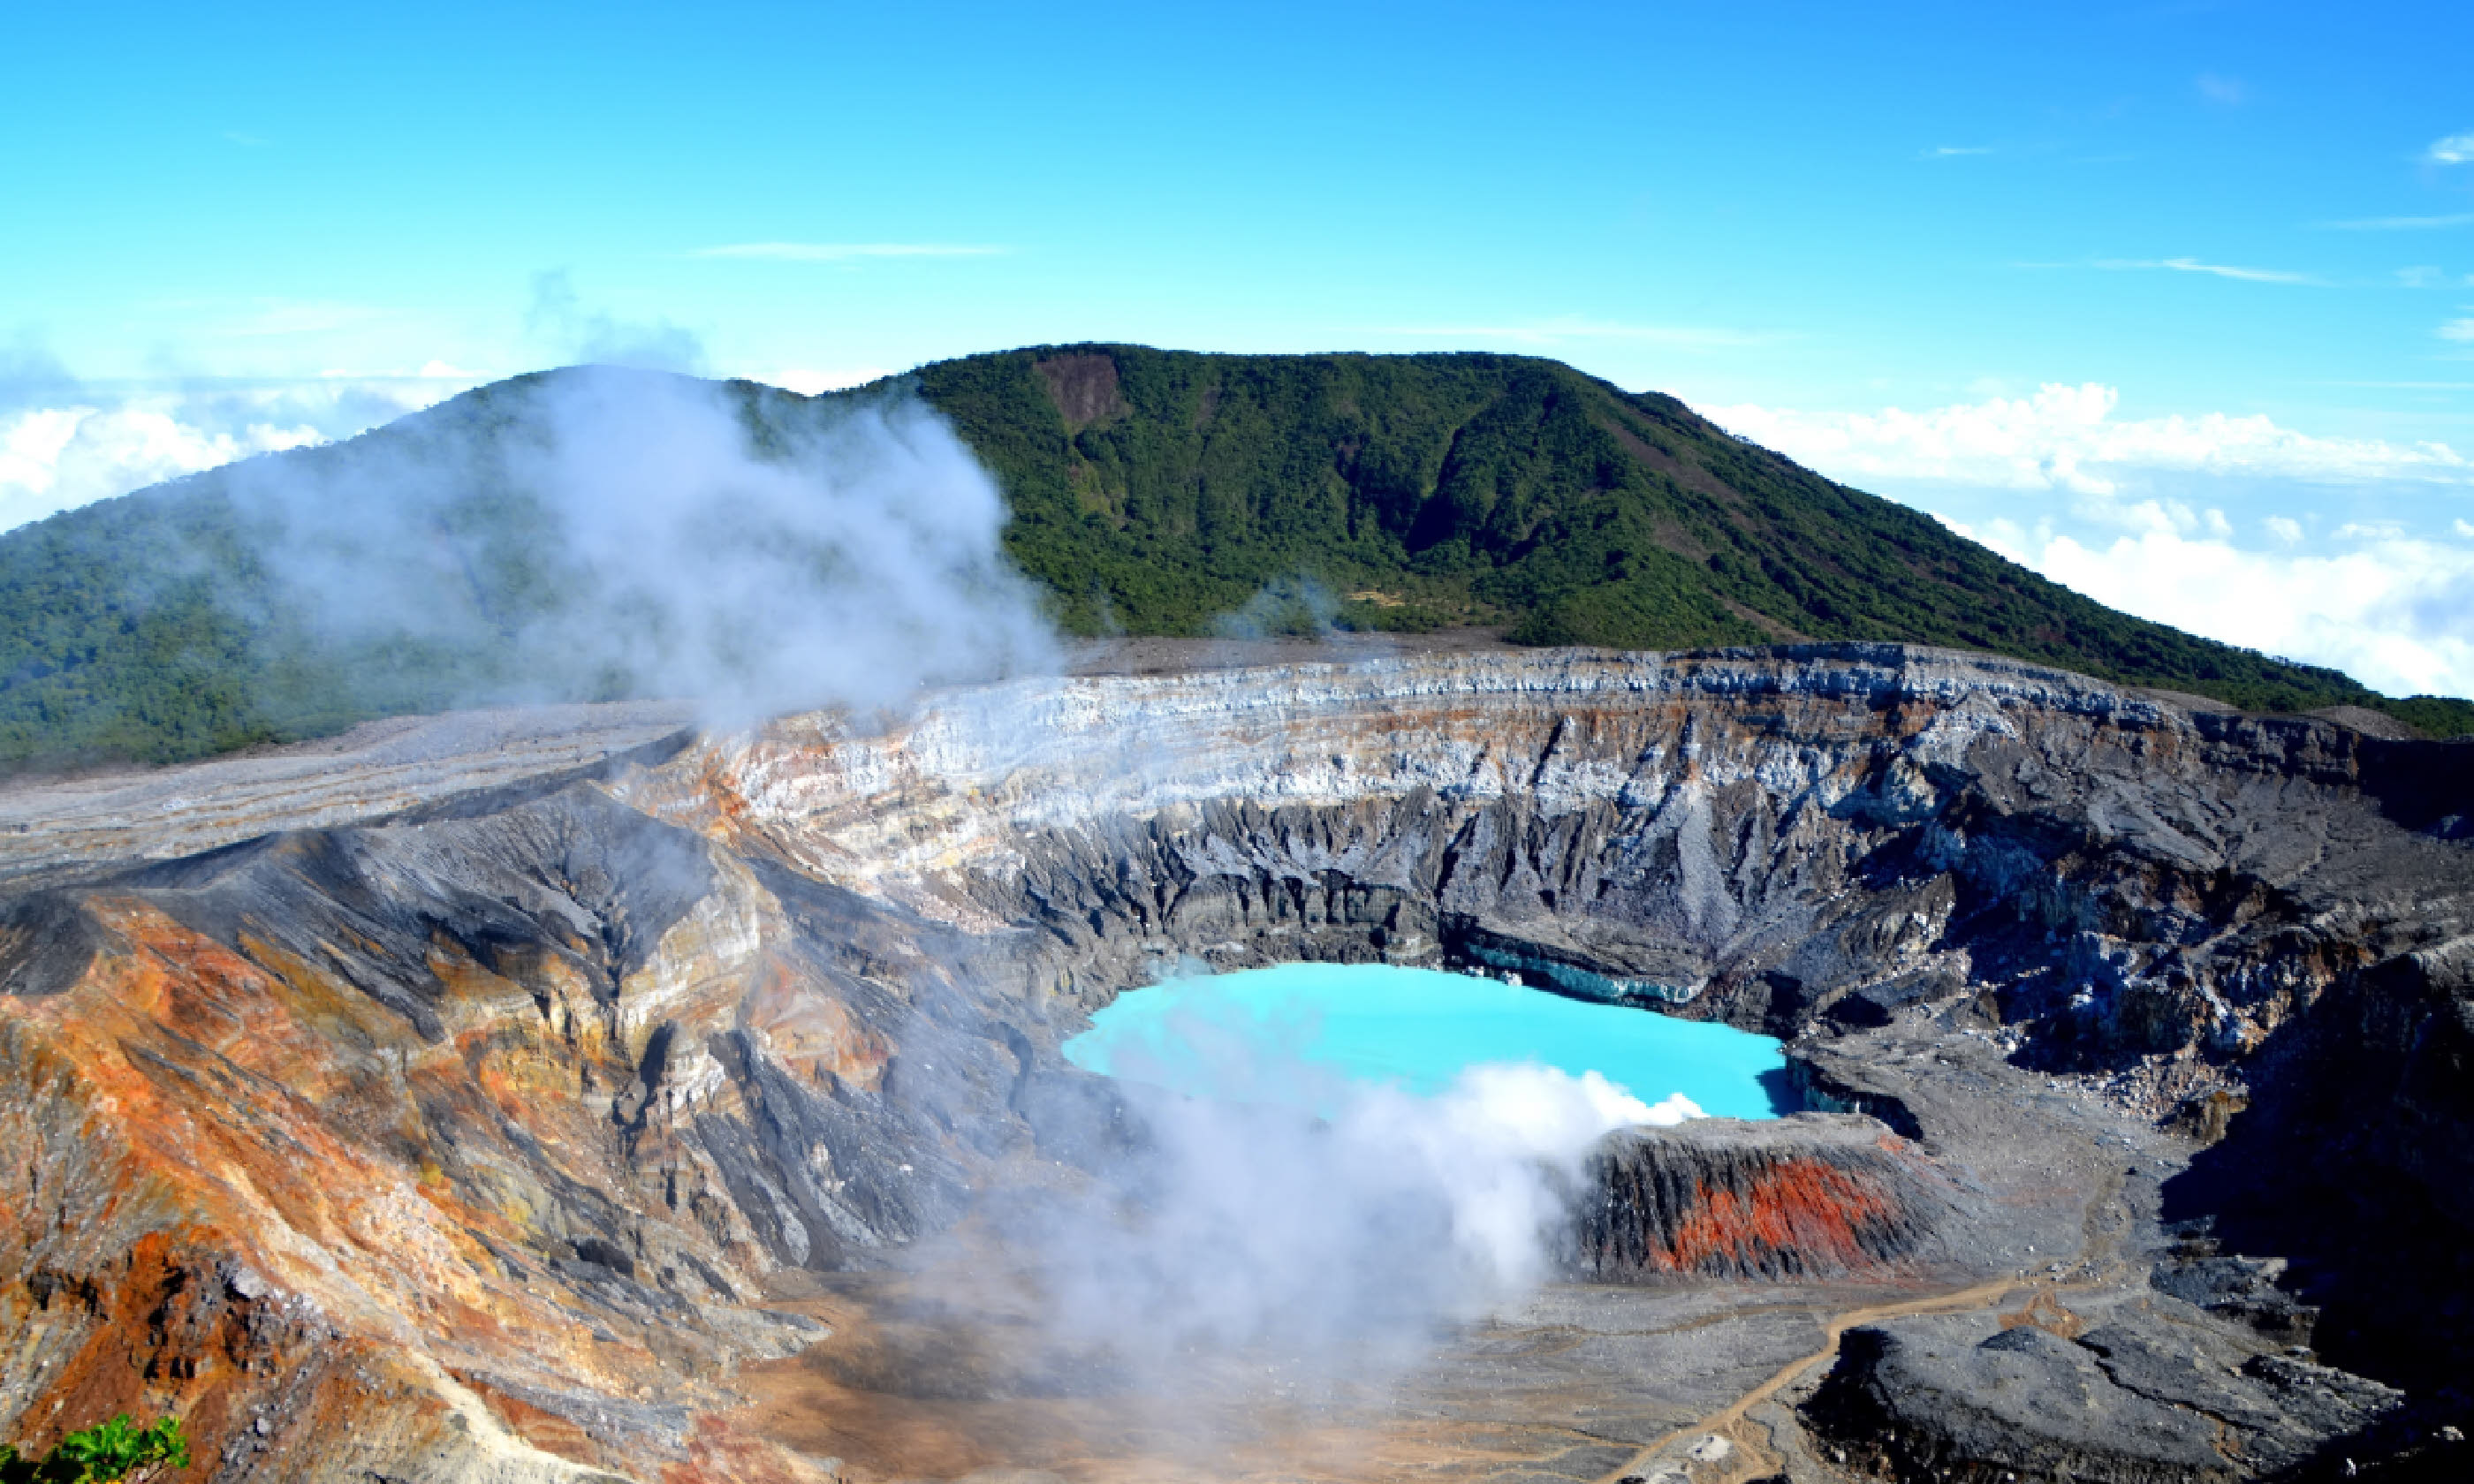 Poas volcano in Costa Rica (Shutterstock)